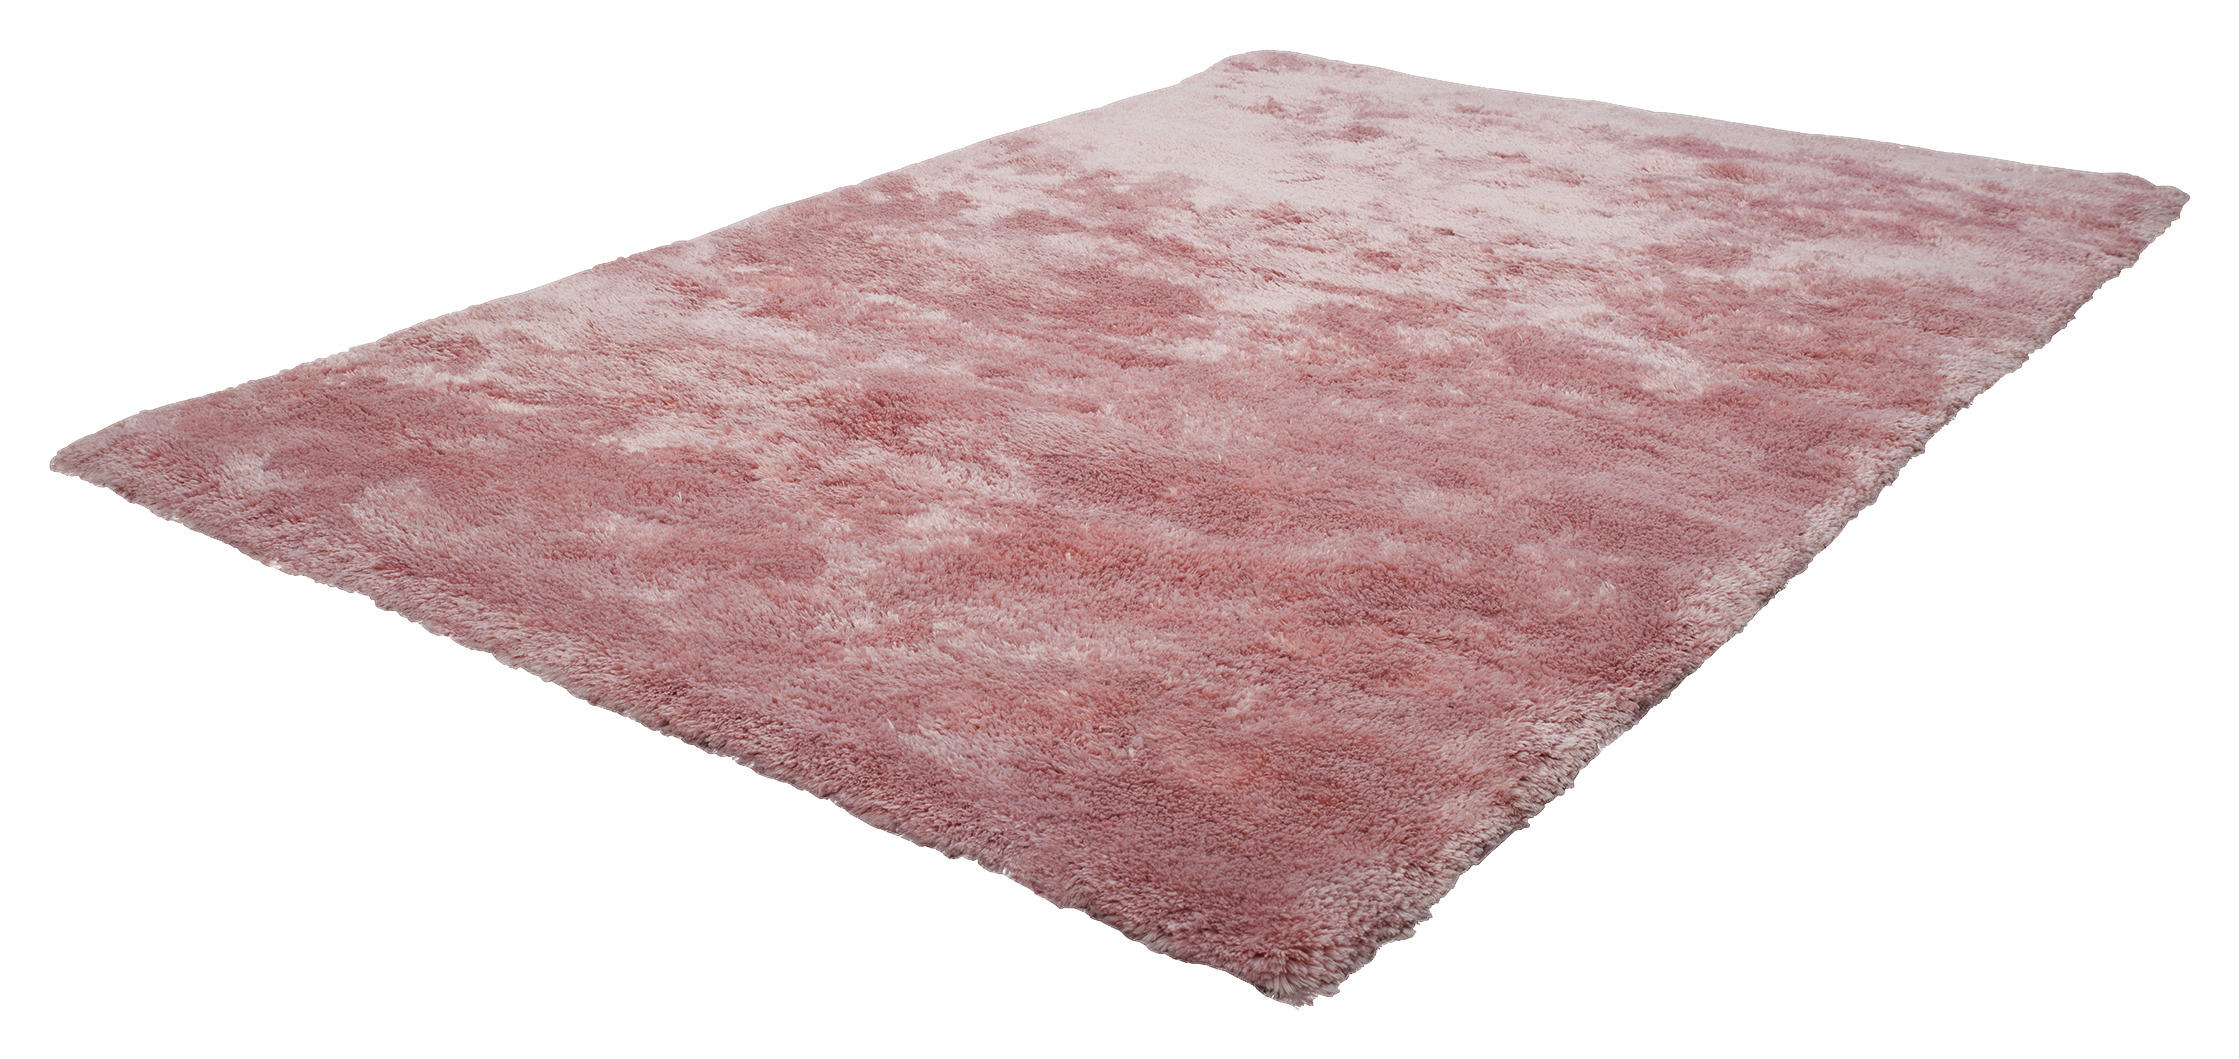 Welche Faktoren es vor dem Bestellen die Teppich schlammfarben zu analysieren gilt!